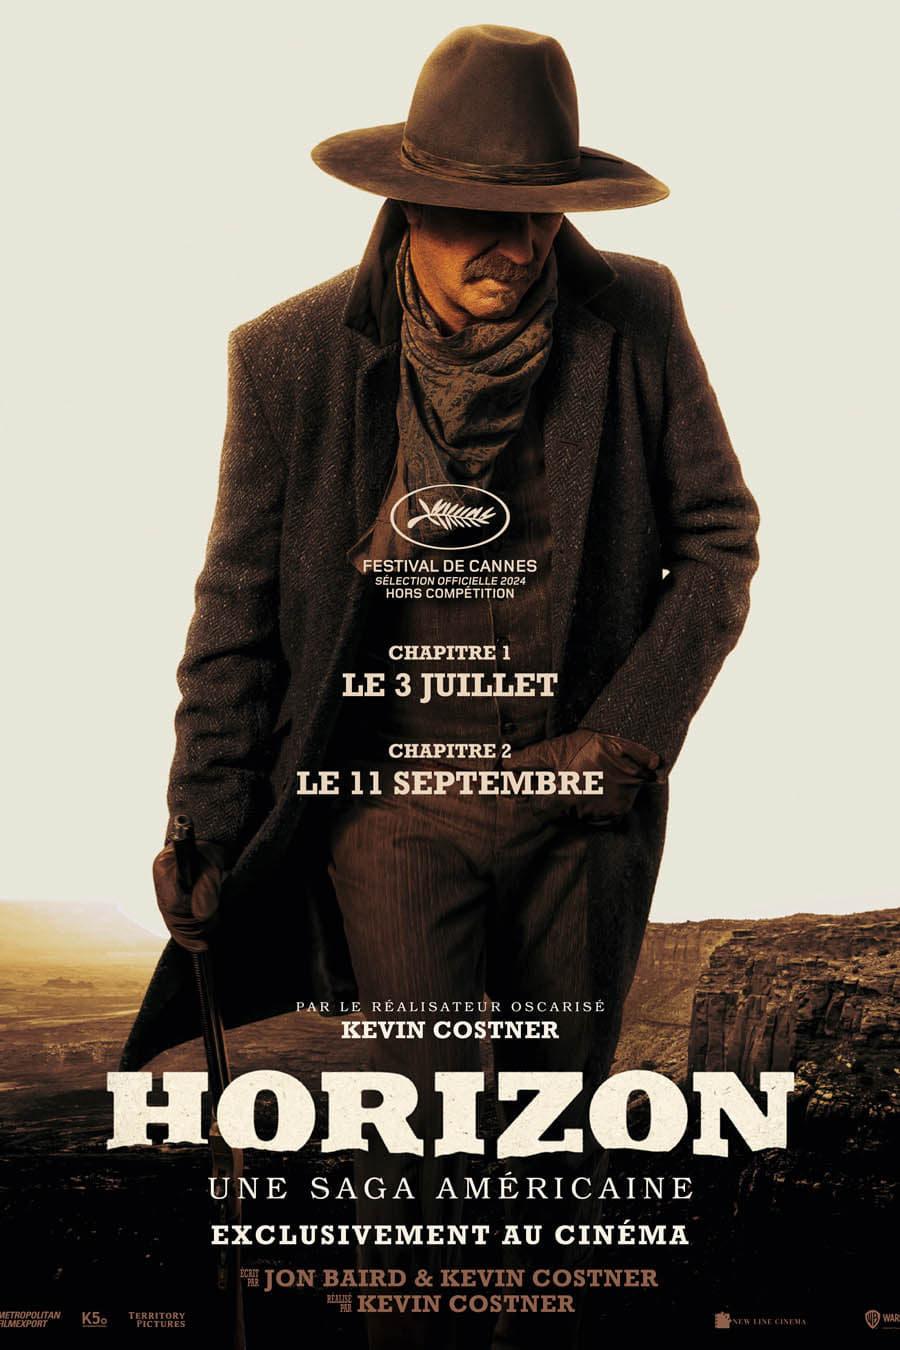 Horizon : Une saga américaine - Chapitre 1 est-il disponible sur Netflix ou autre ?